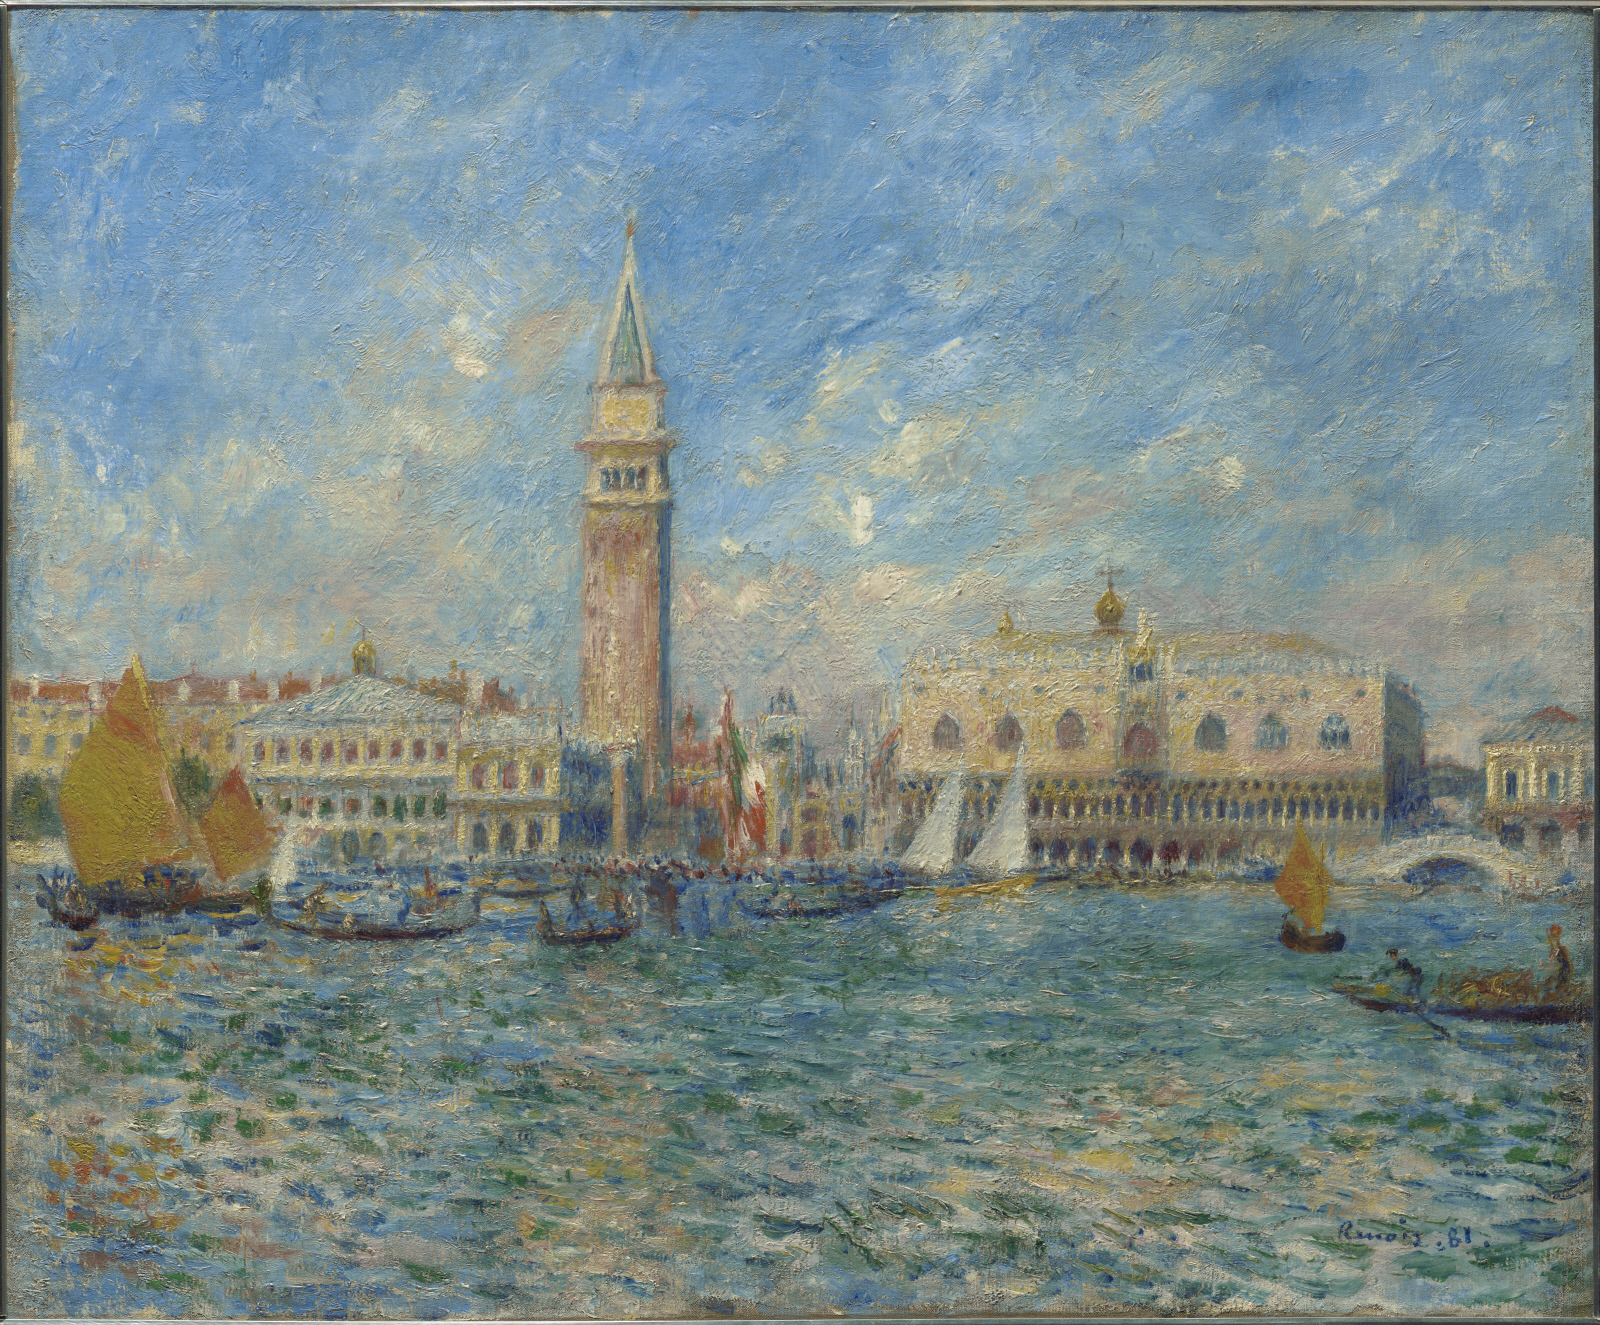 Venecia, el Palacio Ducal by Pierre-Auguste Renoir - 1881 - 54.5 x 65.7 cm The Clark